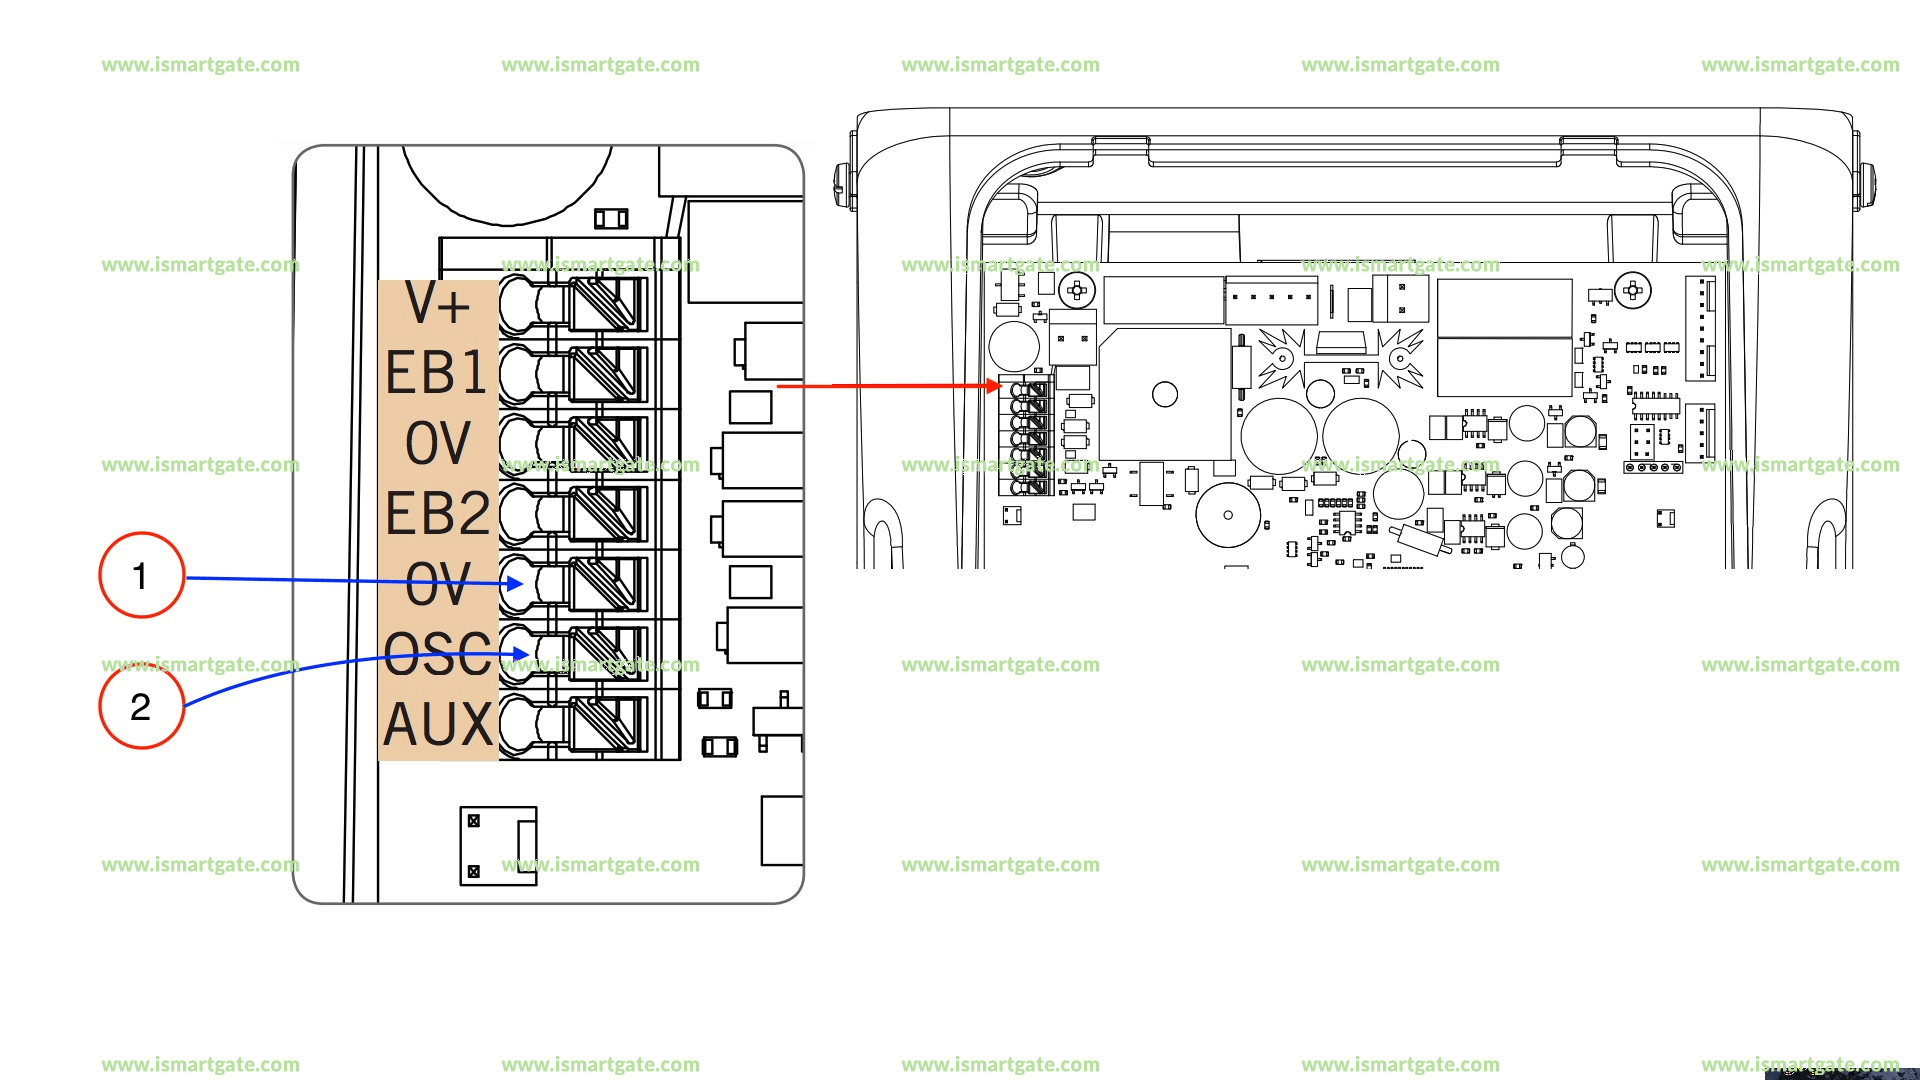 Wiring diagram for B&D SDO-2v2